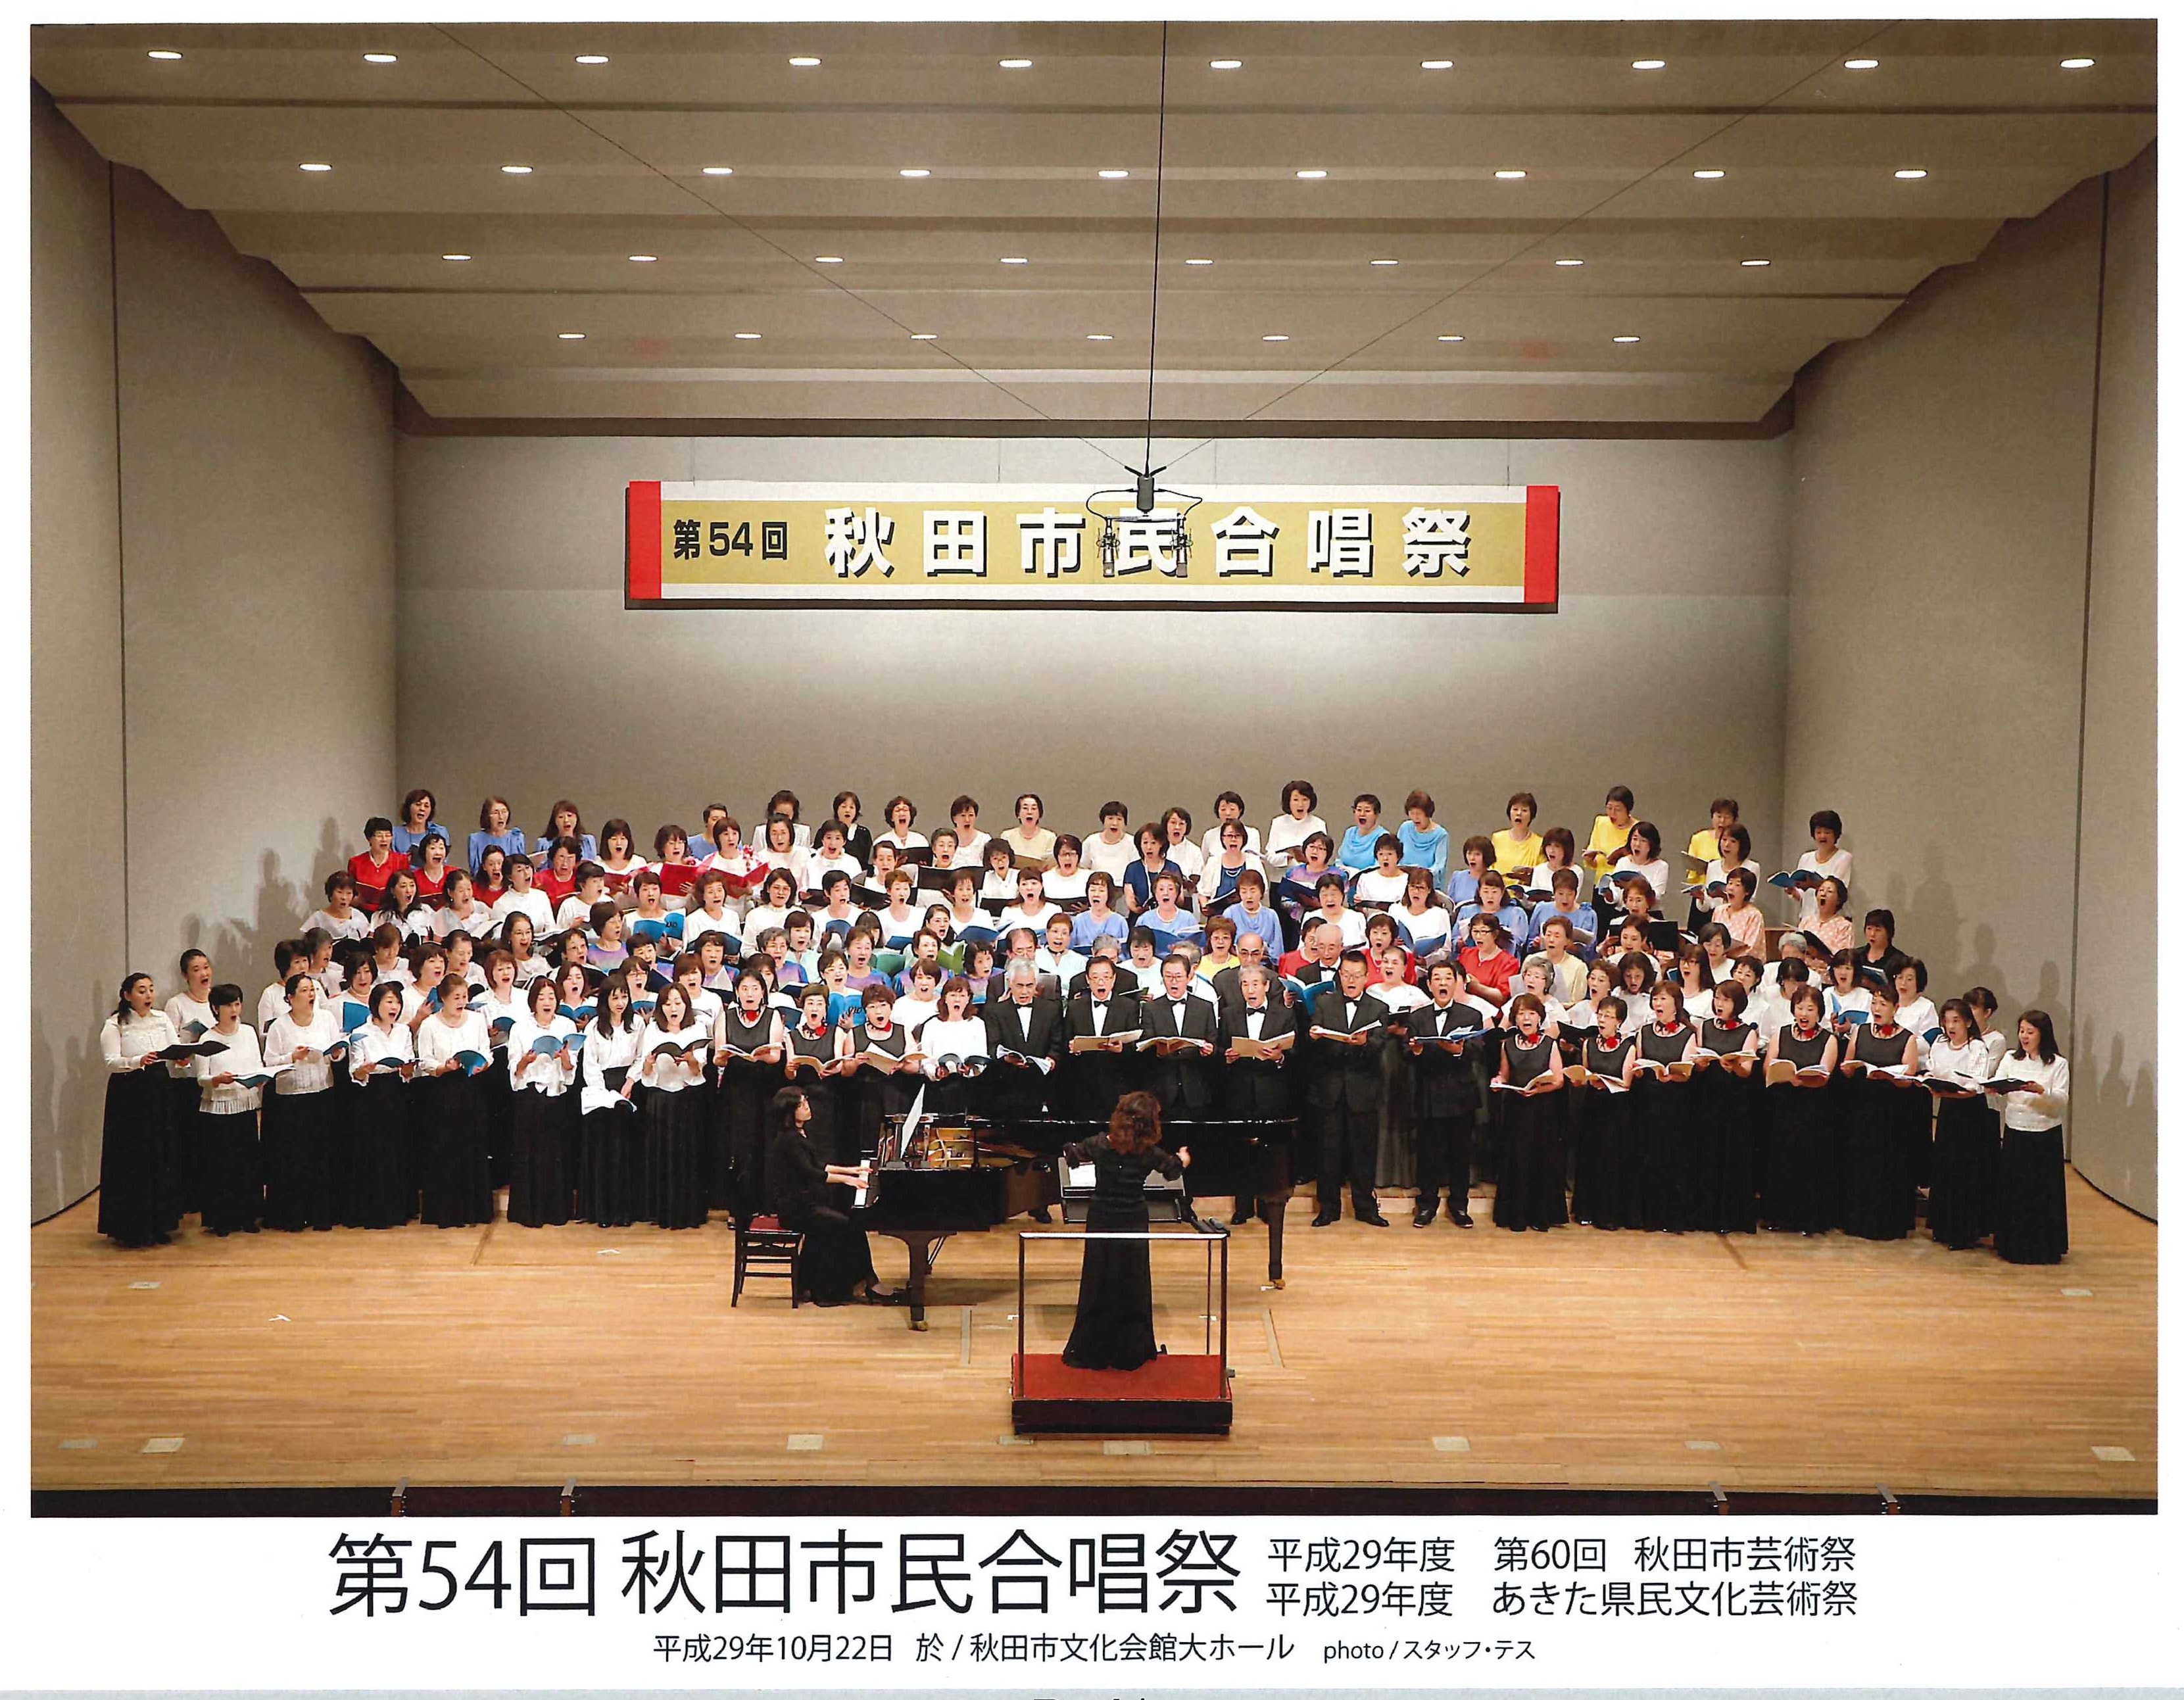 10/27-28 秋田市民合唱連盟創立55周年記念「秋田市民合唱祭」